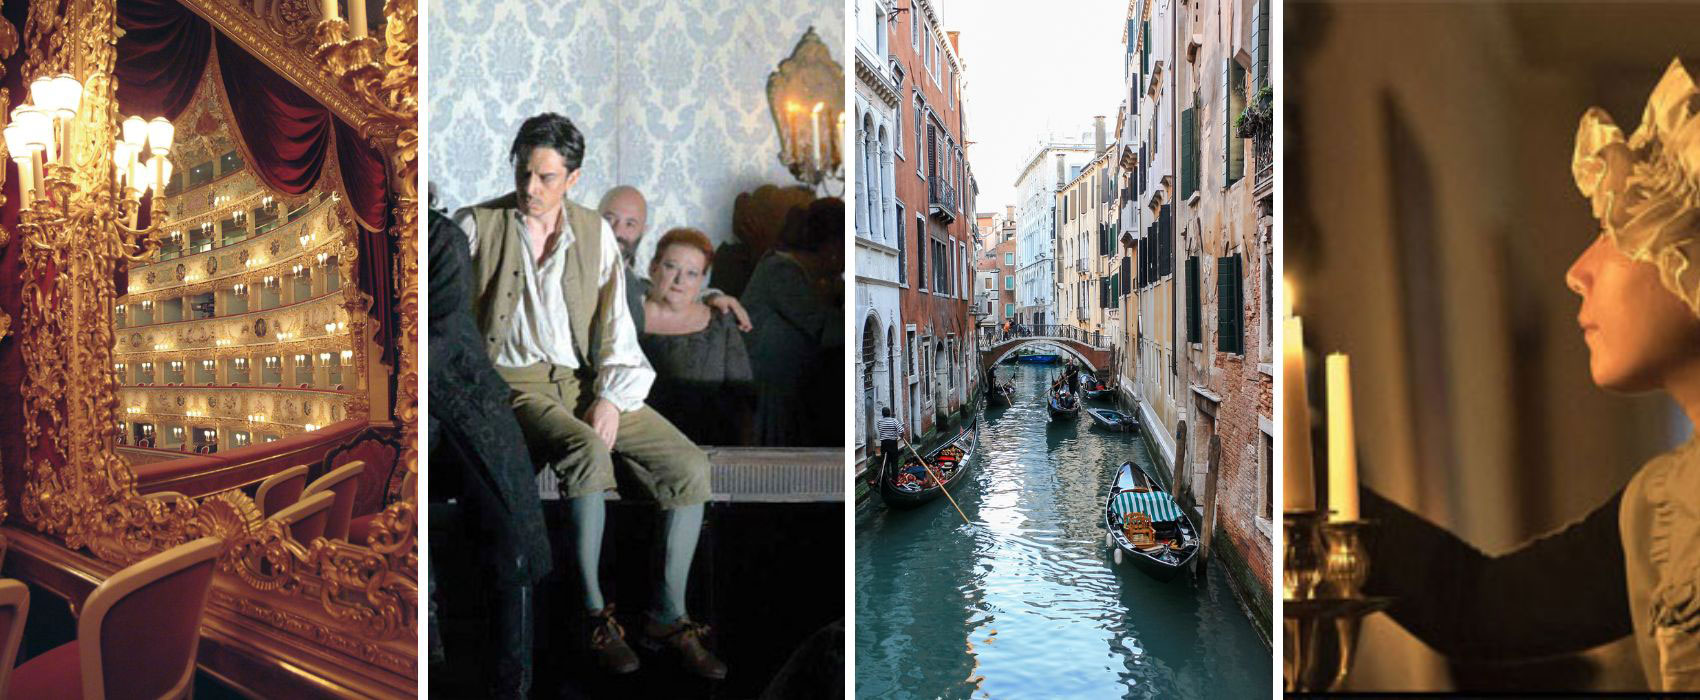 Venice from 17/05 to 20/05: Don Giovanni at Casanova's